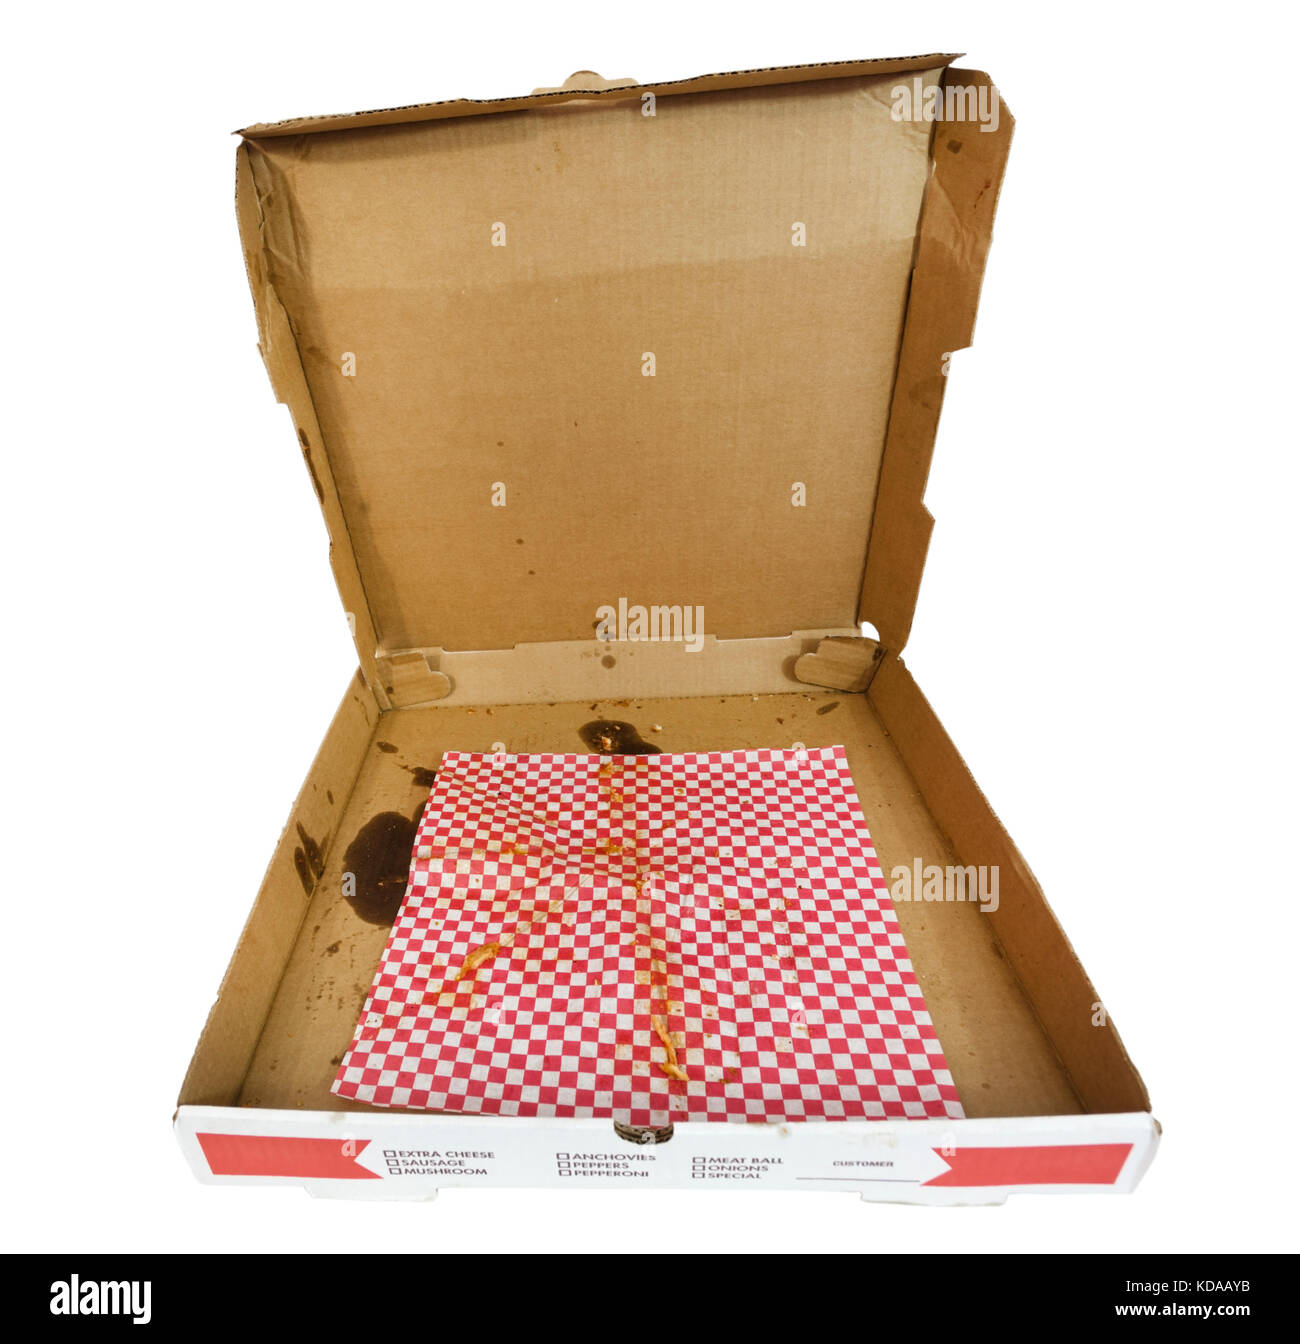 Leere pizza box mit fettigen rot-weiß karierten Papier. Deckel öffnen. isoliert. Stockfoto